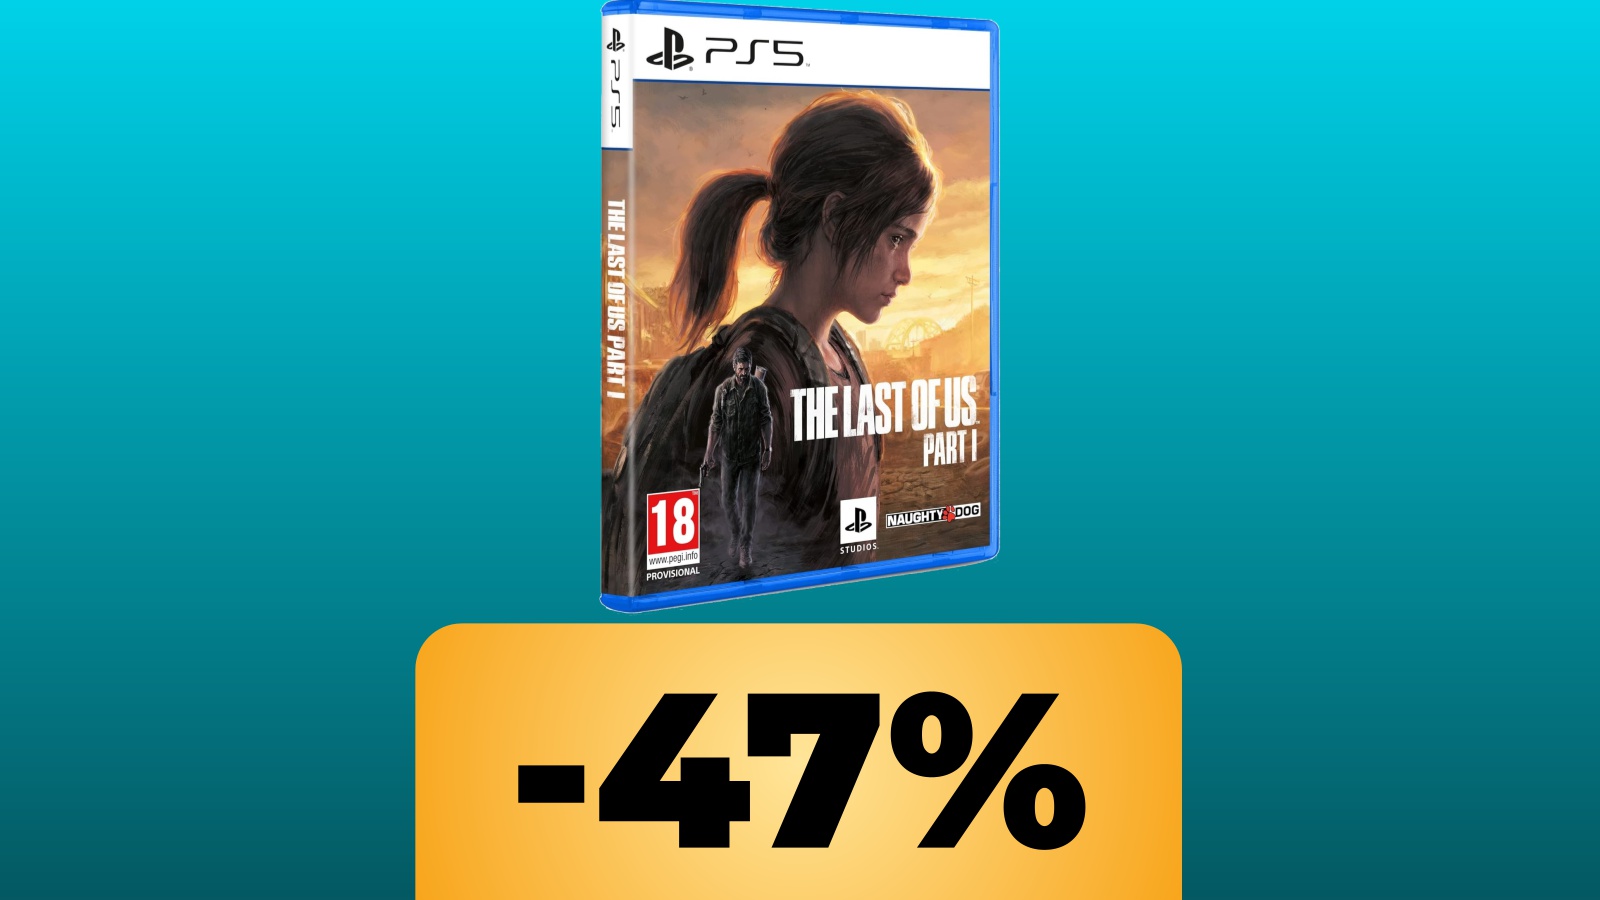 La confezione PS5 di The Last of Us Parte 1 e sotto lo sconto percentuale dell'offerta di Amazon